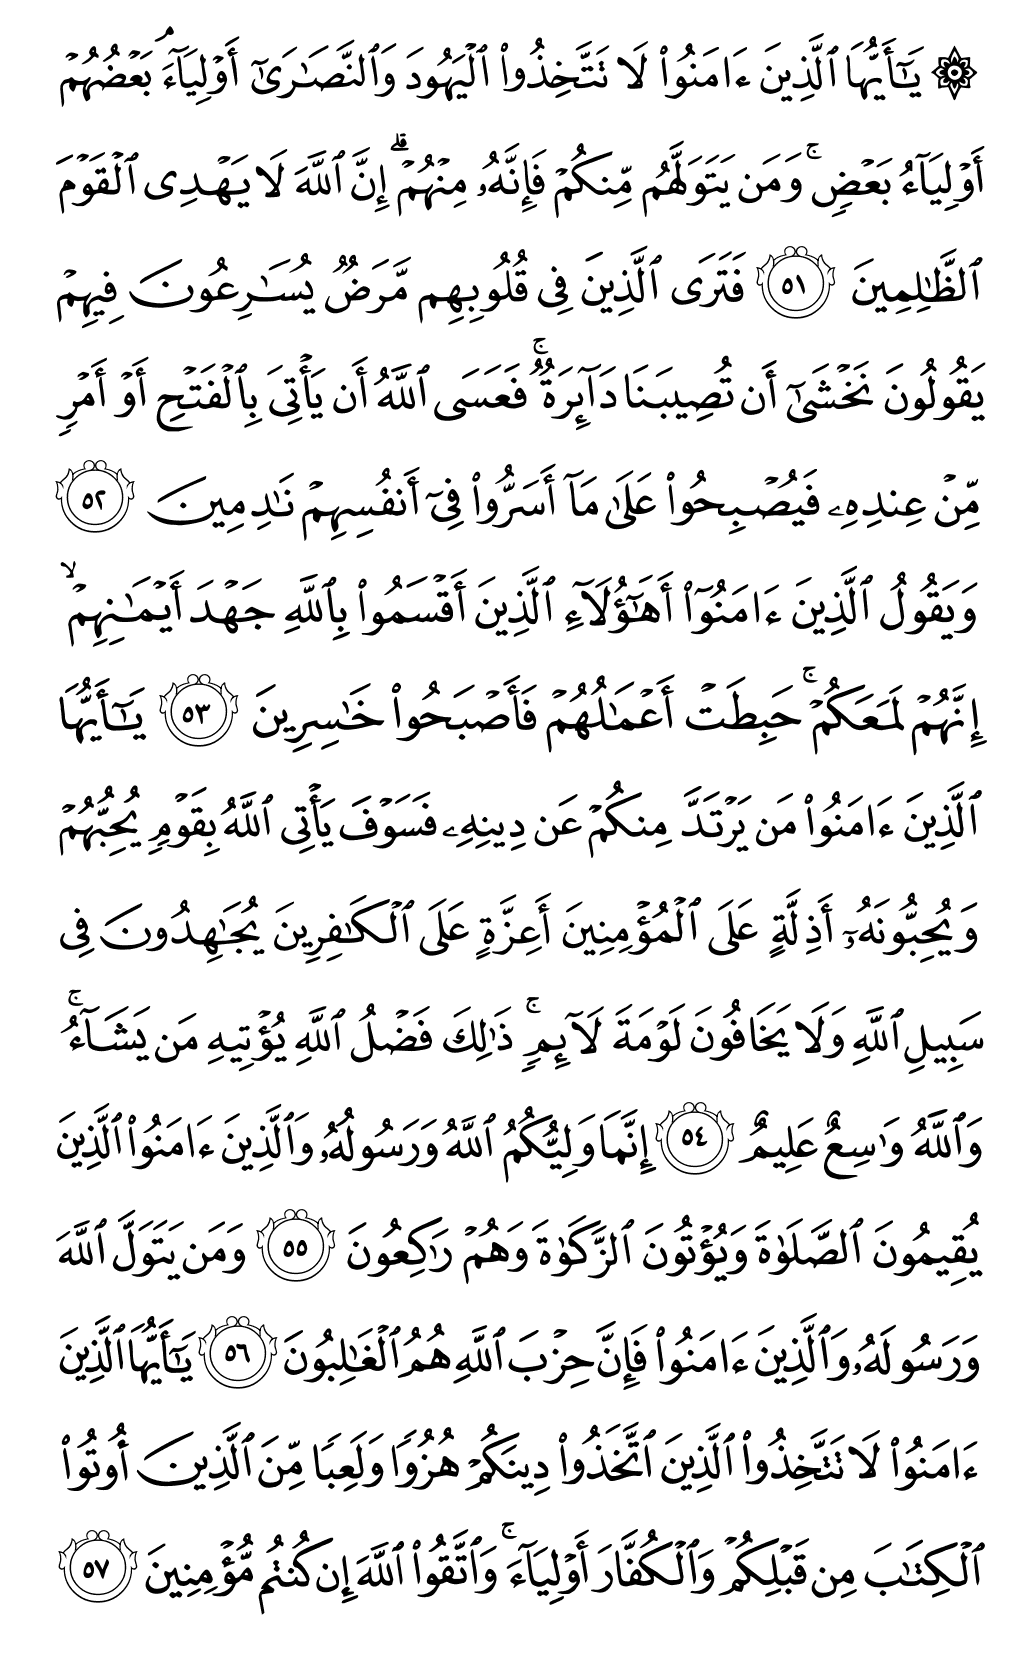 الصفحة رقم 117 من القرآن الكريم